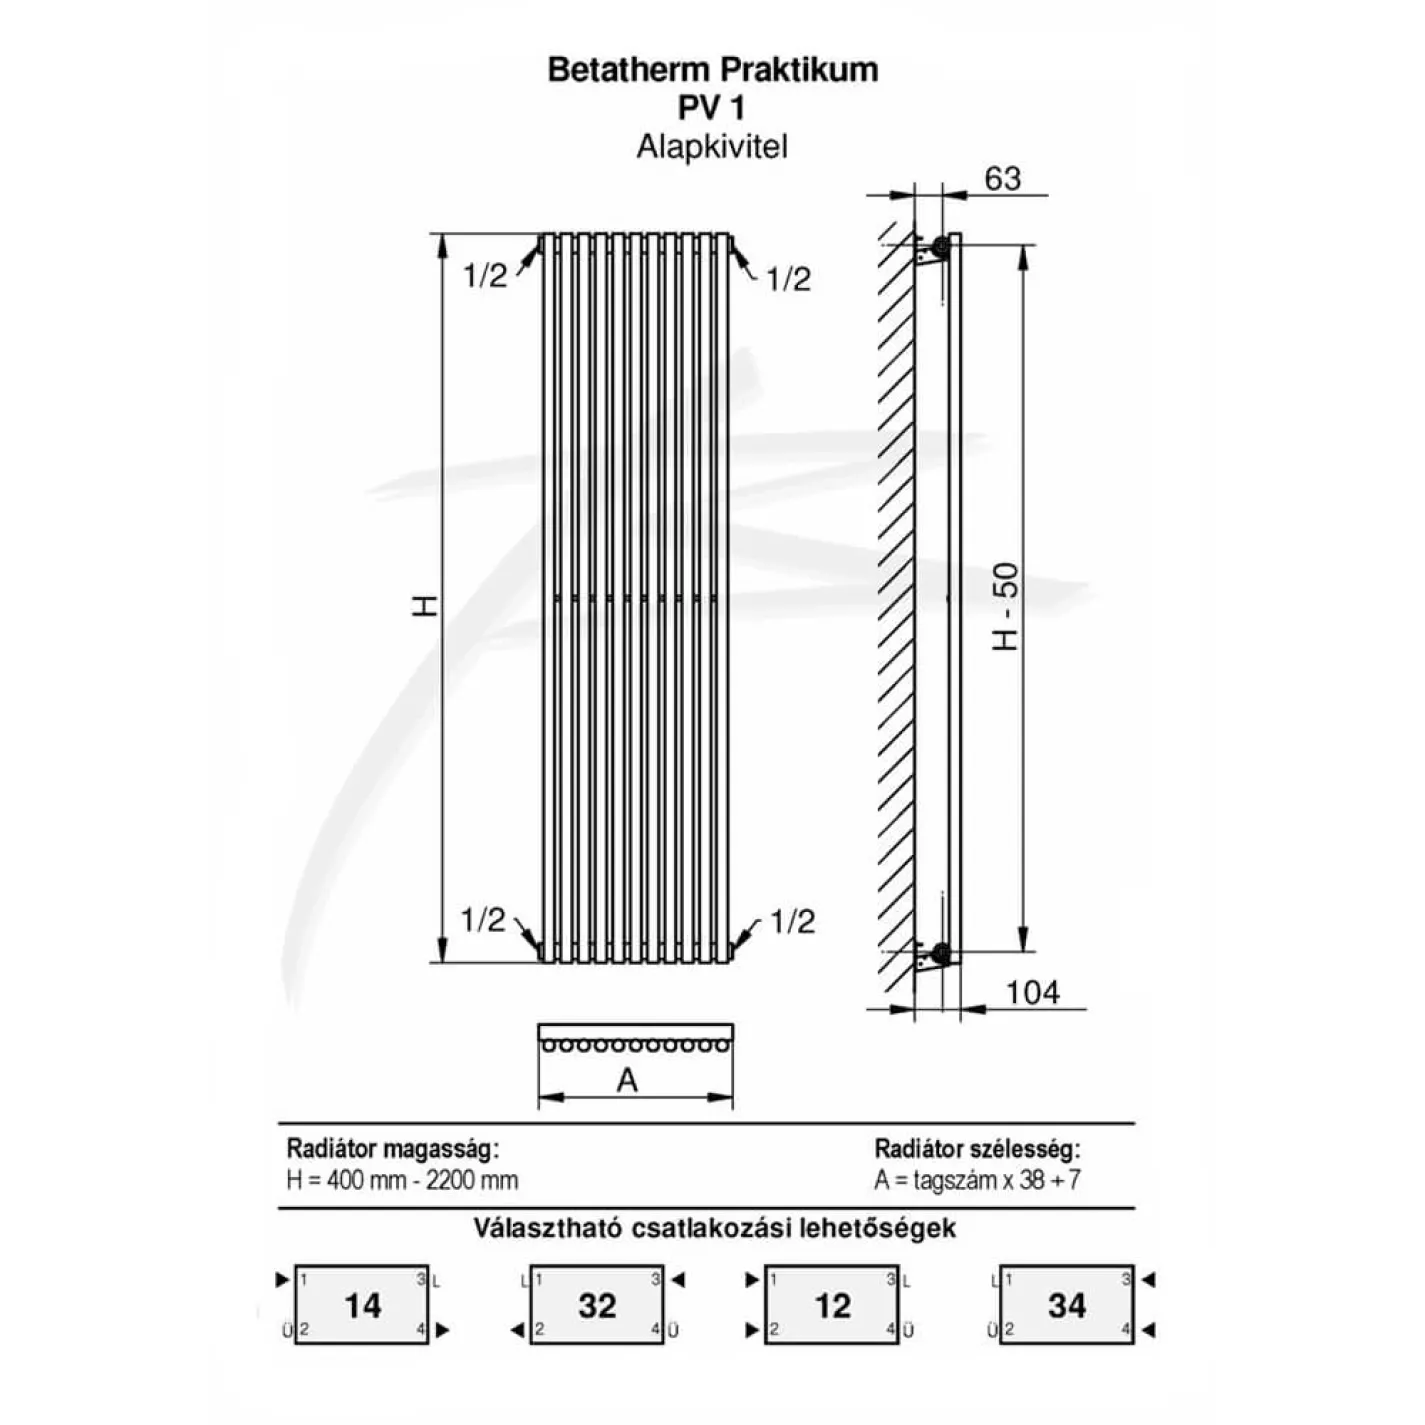 Трубчастый радиатор Betatherm Praktikum 1 1800x463x104 мм вертикальный RAL9005M - Фото 1